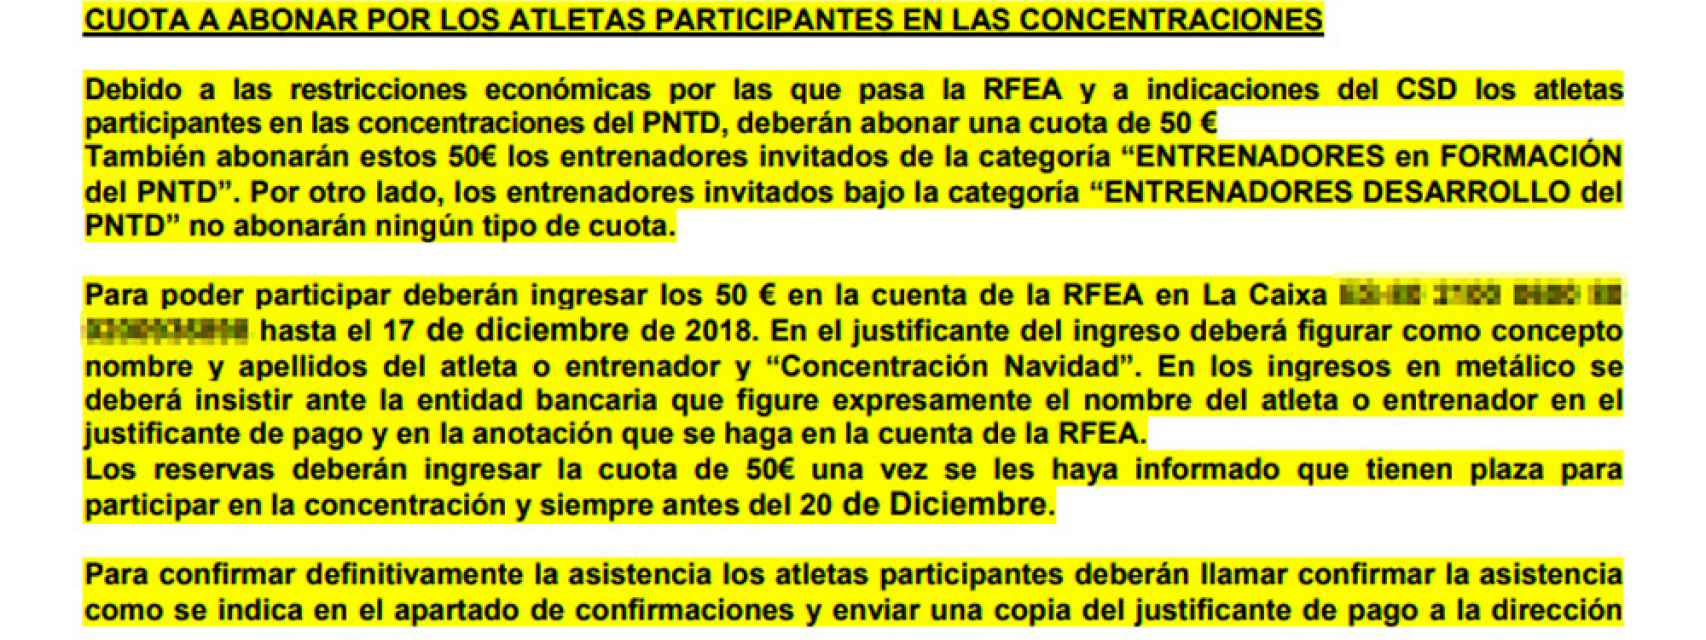 Extracto de la circular de la Real Federación Española de Atletismo perteneciente a la concentración de Navidad.